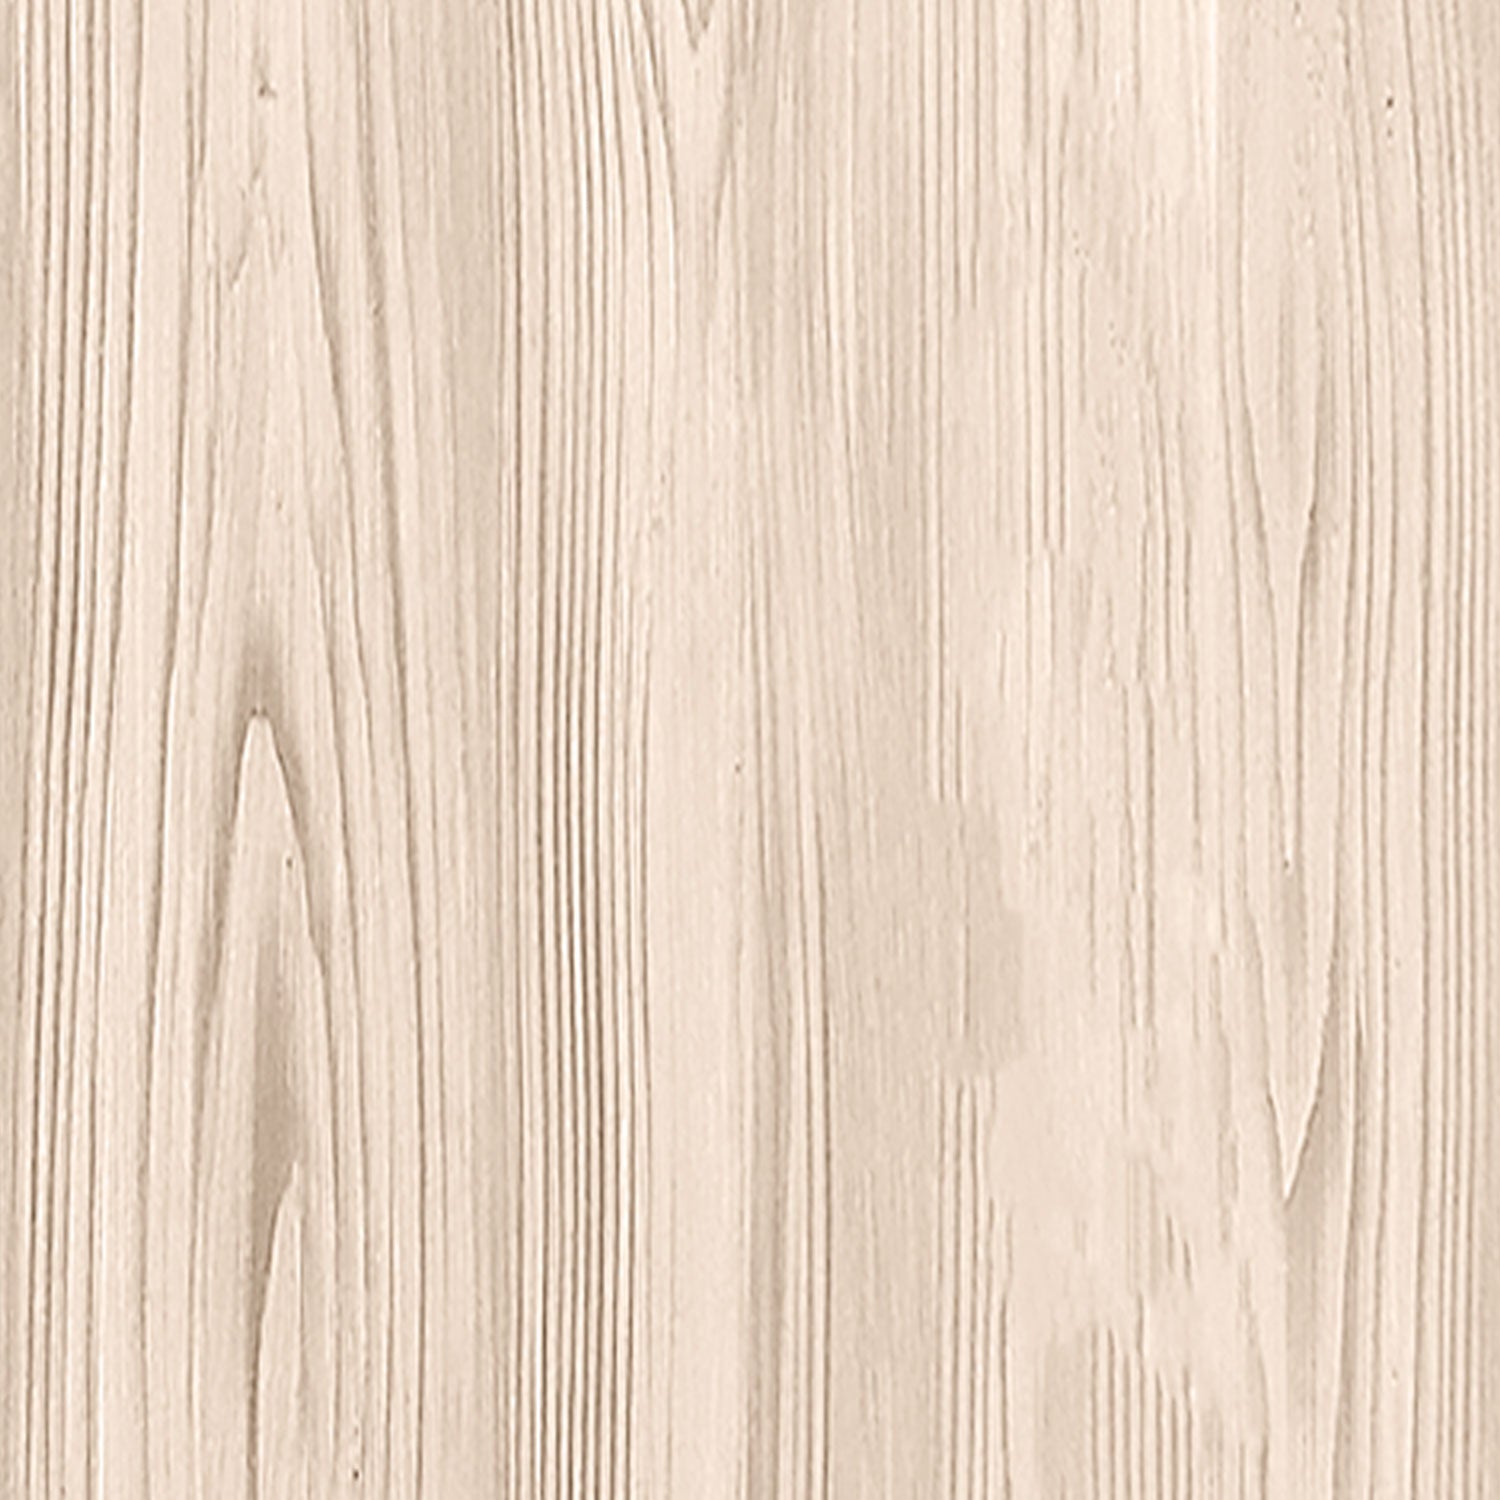 Multi-purpose Wood'n Kit - White Oak - Interior Top Coat